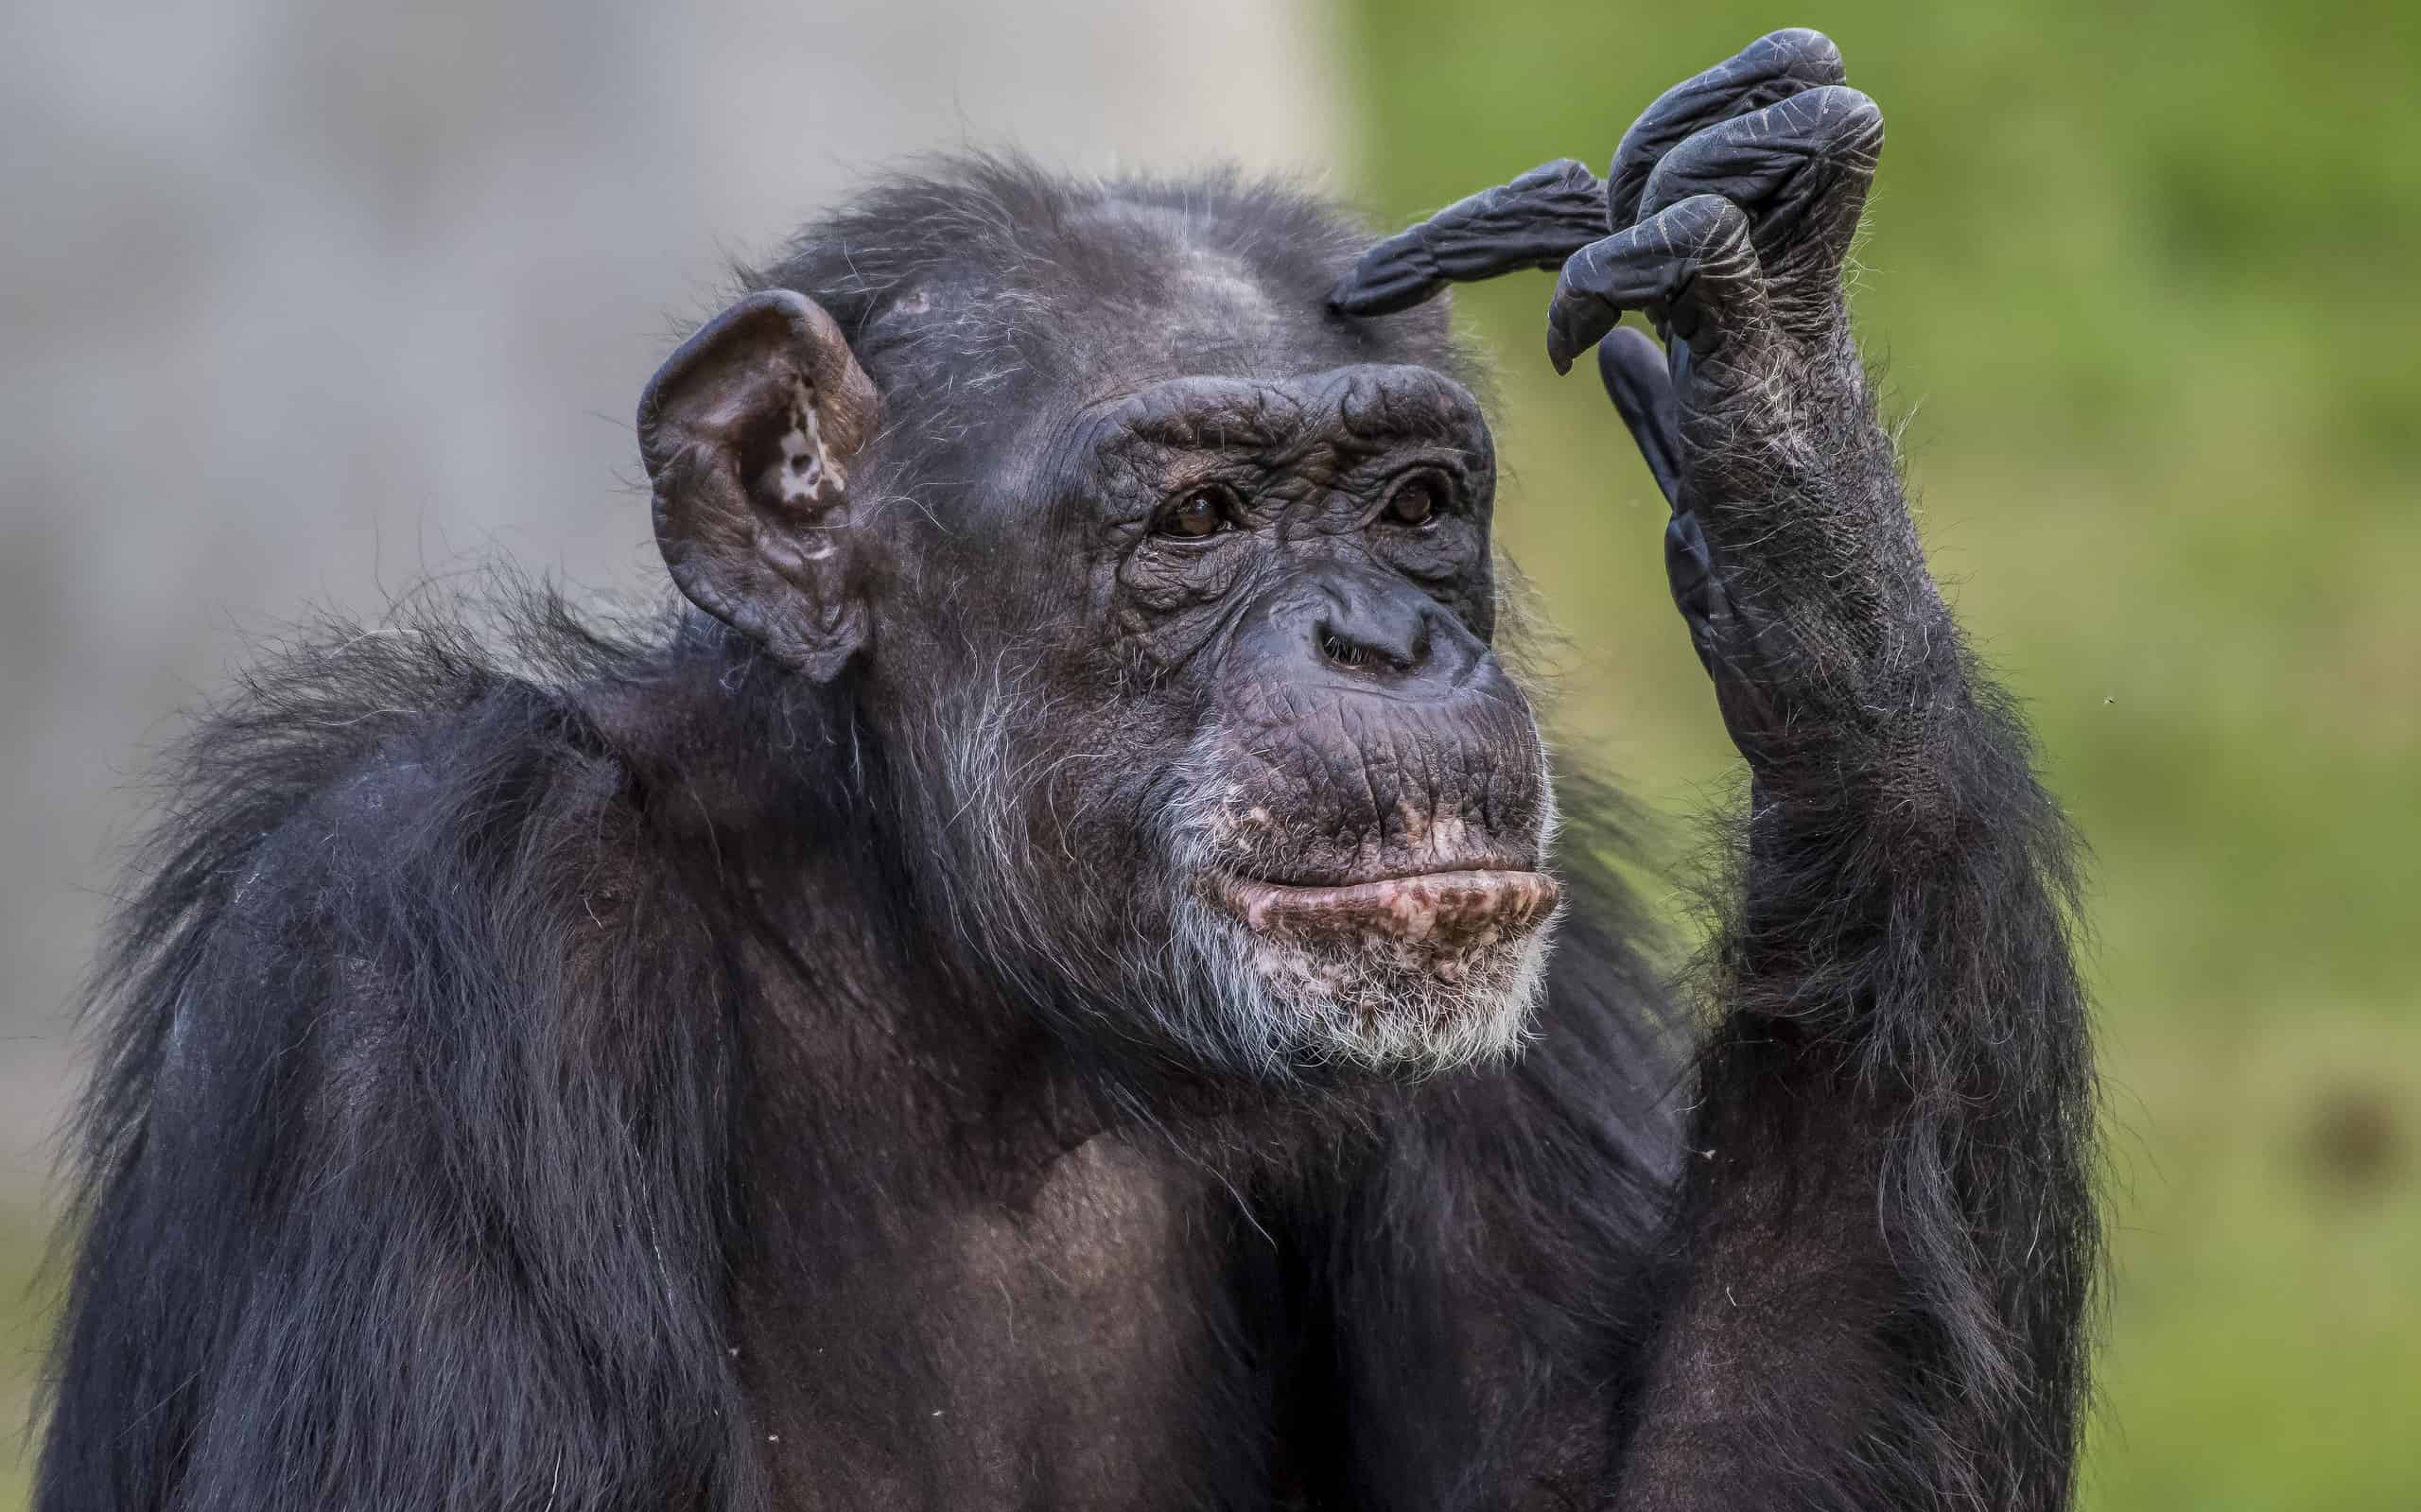 Closeup shot of a chimpanzee making a thinking posture